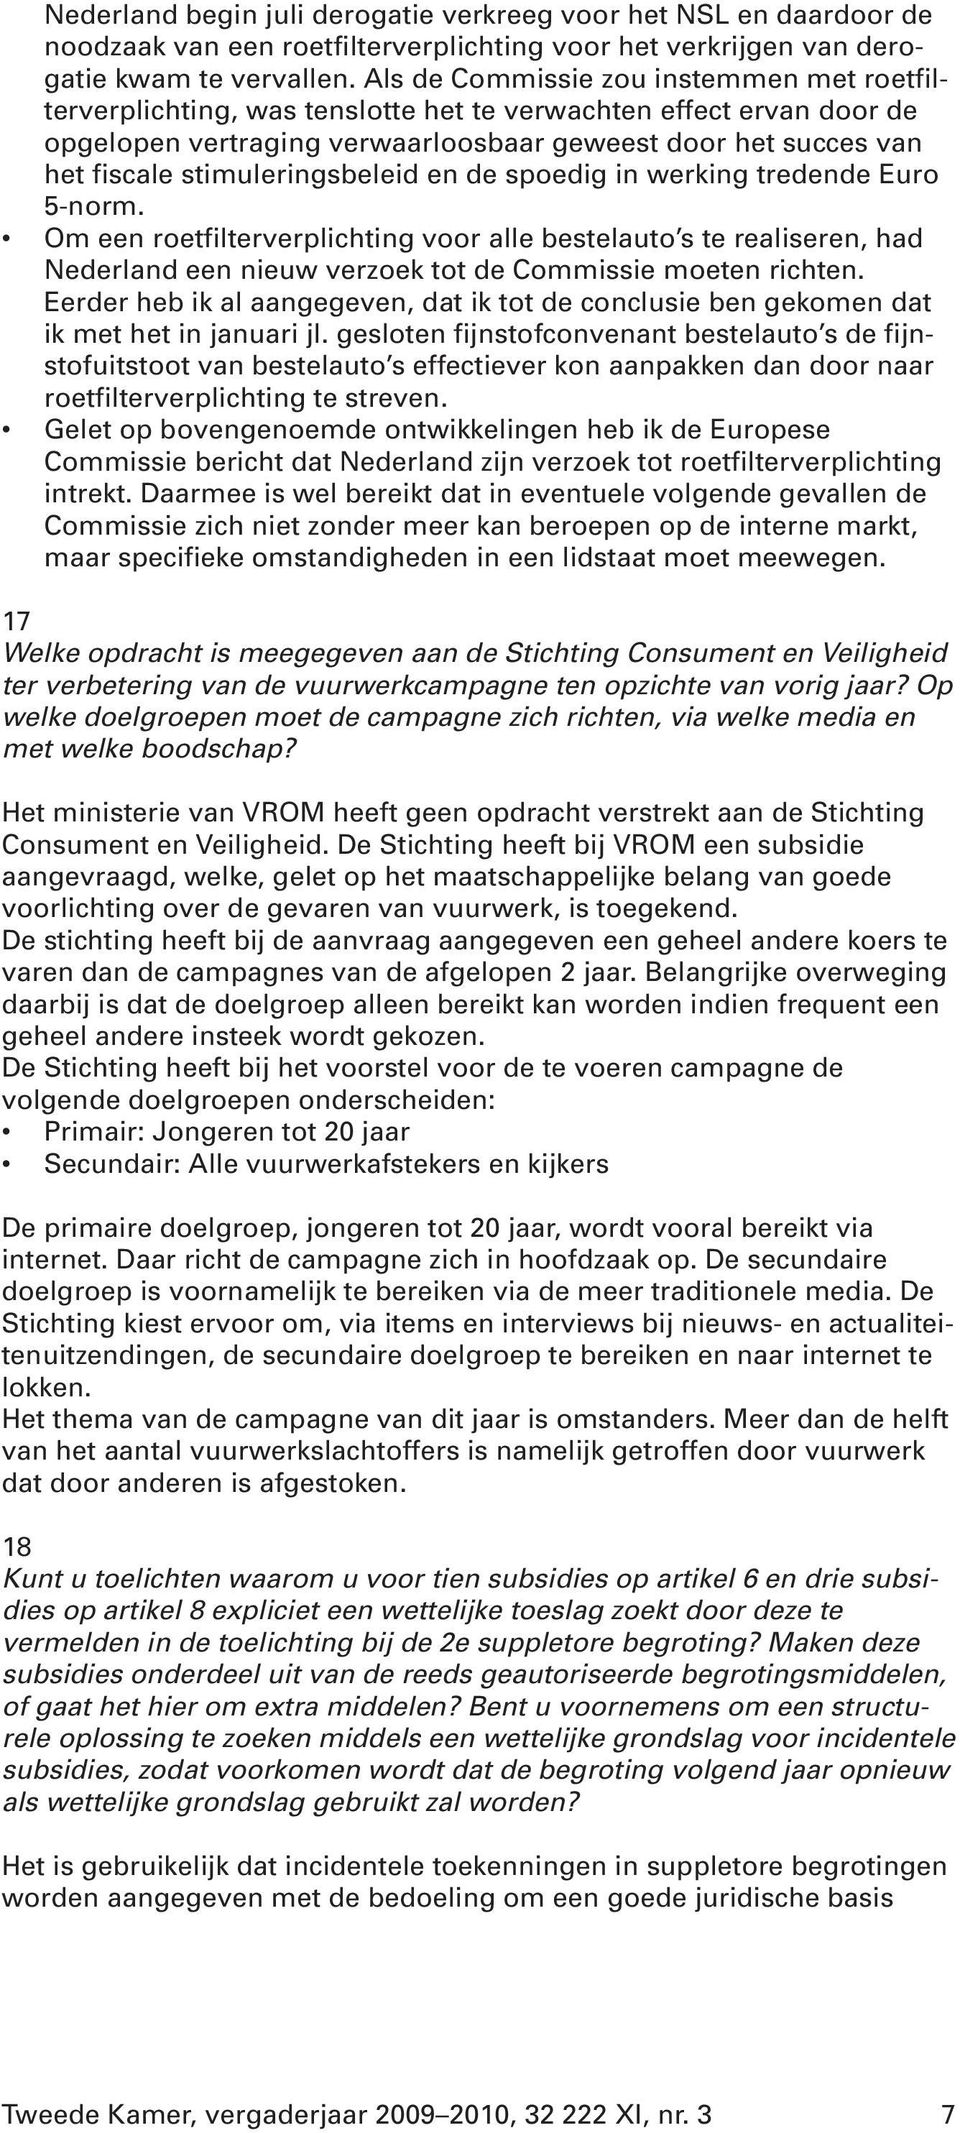 stimuleringsbeleid en de spoedig in werking tredende Euro 5-norm. Om een roetfilterverplichting voor alle bestelauto s te realiseren, had Nederland een nieuw verzoek tot de Commissie moeten richten.